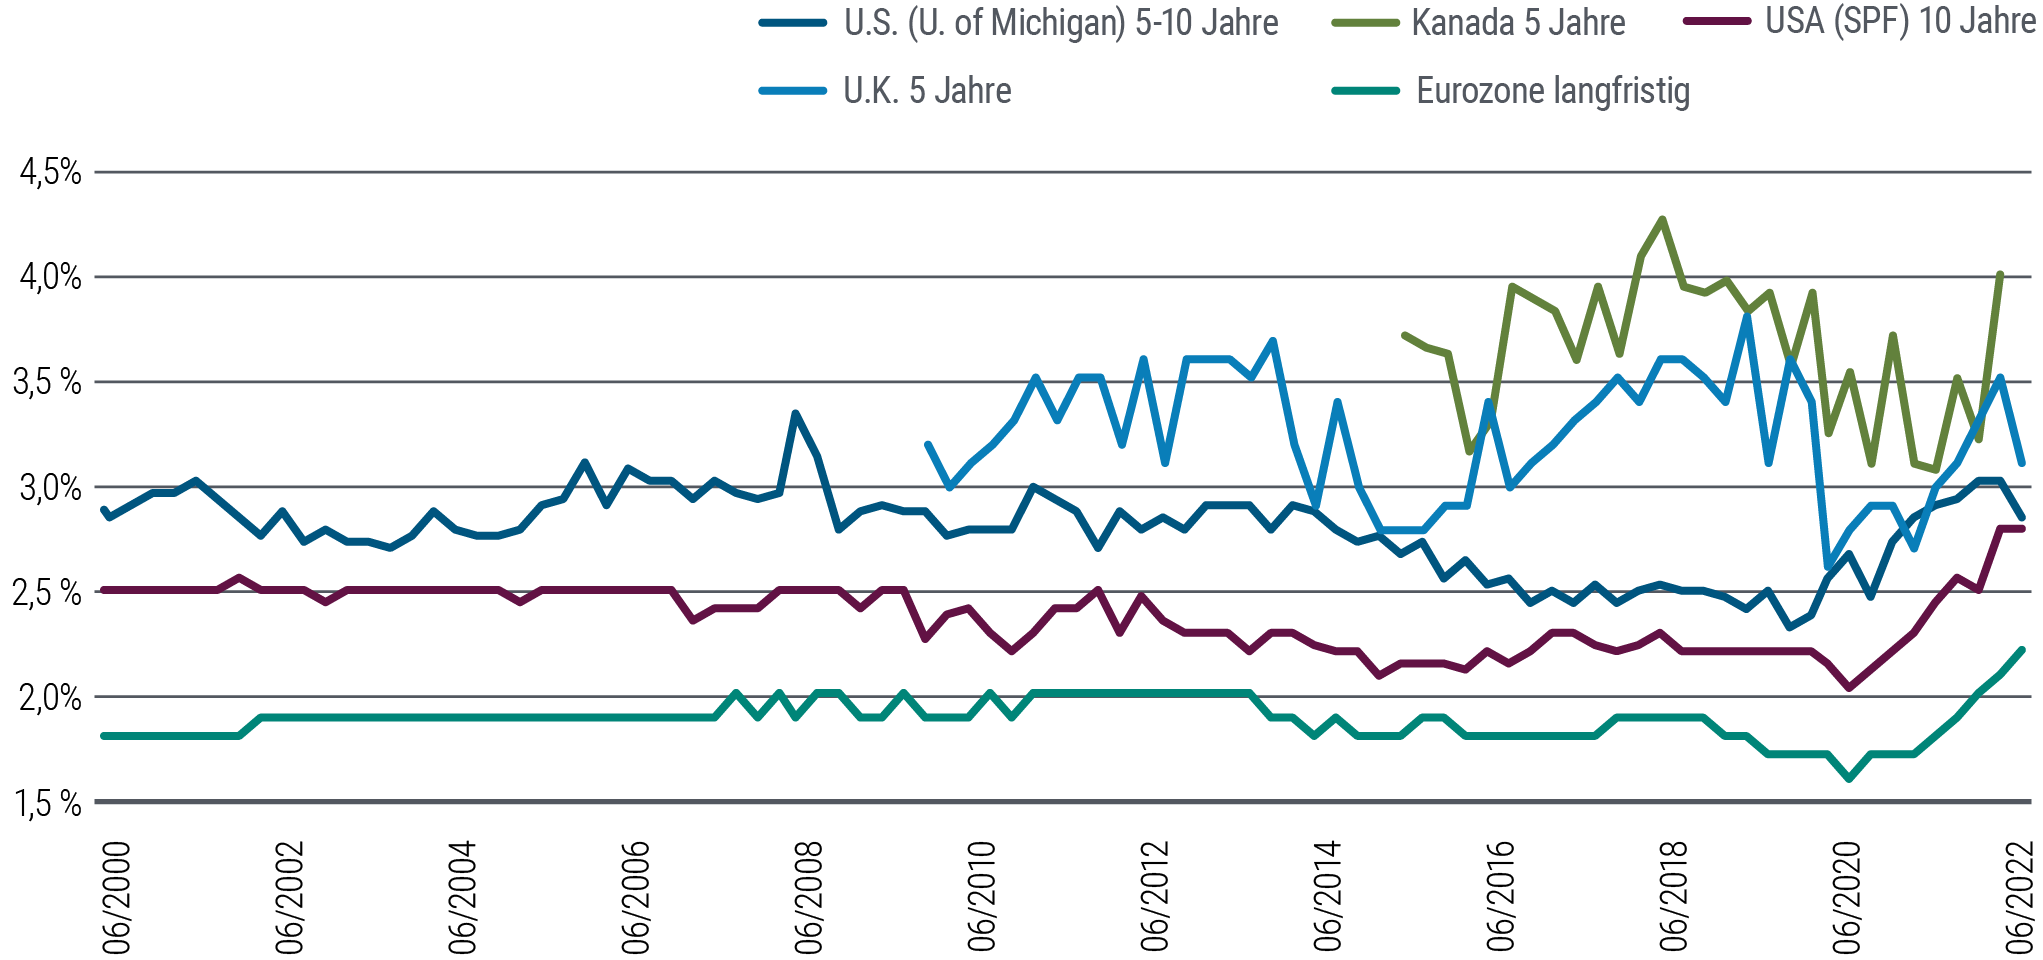 Ein Liniendiagramm zeigt die Inflationserwartungen von Mitte 2000 bis zum 3. Quartal 2022 für die Vereinigten Staaten, Kanada, Großbritannien und die Eurozone. Alle Linien steigen gegenüber den Tiefstständen zu Beginn der Pandemie. Die Fünf-Jahres-Inflationserwartungen für Kanada (4,0 Prozent) und Großbritannien (3,1 Prozent) sind die höchsten in der Darstellung (am Ende der Grafik). Die Kennzahlen dieser beiden Länder sind im Zeitablauf historisch gesehen die höchsten auf dem Chart und die volatilsten in dieser Staatengruppe mit jeweils höheren Amplituden. Die anderen drei Inflationskennzahlen zeigen im Zeitablauf moderatere und niedrigere Linien, allerdings abgelöst von einem Anstieg in jüngster Zeit. Die Fünf- bis Zehn-Jahres-Inflationserwartungen für die Vereinigten Staaten verlaufen in diesem Zeitraum vergleichsweise flacher. Sie erreichten jüngst 2,8 Prozent gegenüber einem Charttief von etwa 2,3 Prozent Ende 2019. Die Zehn-Jahres-Inflationserwartungen für die Vereinigten Staaten liegen bei 2,8 Prozent im Vergleich zu 2 Prozent im September 2020. Die Erwartungen für die Eurozone, die am niedrigsten verlaufende Linie auf dem Chart, erreichen im 3. Quartal 2022 2,2 Prozent, gegenüber 1,6 Prozent im September 2020.